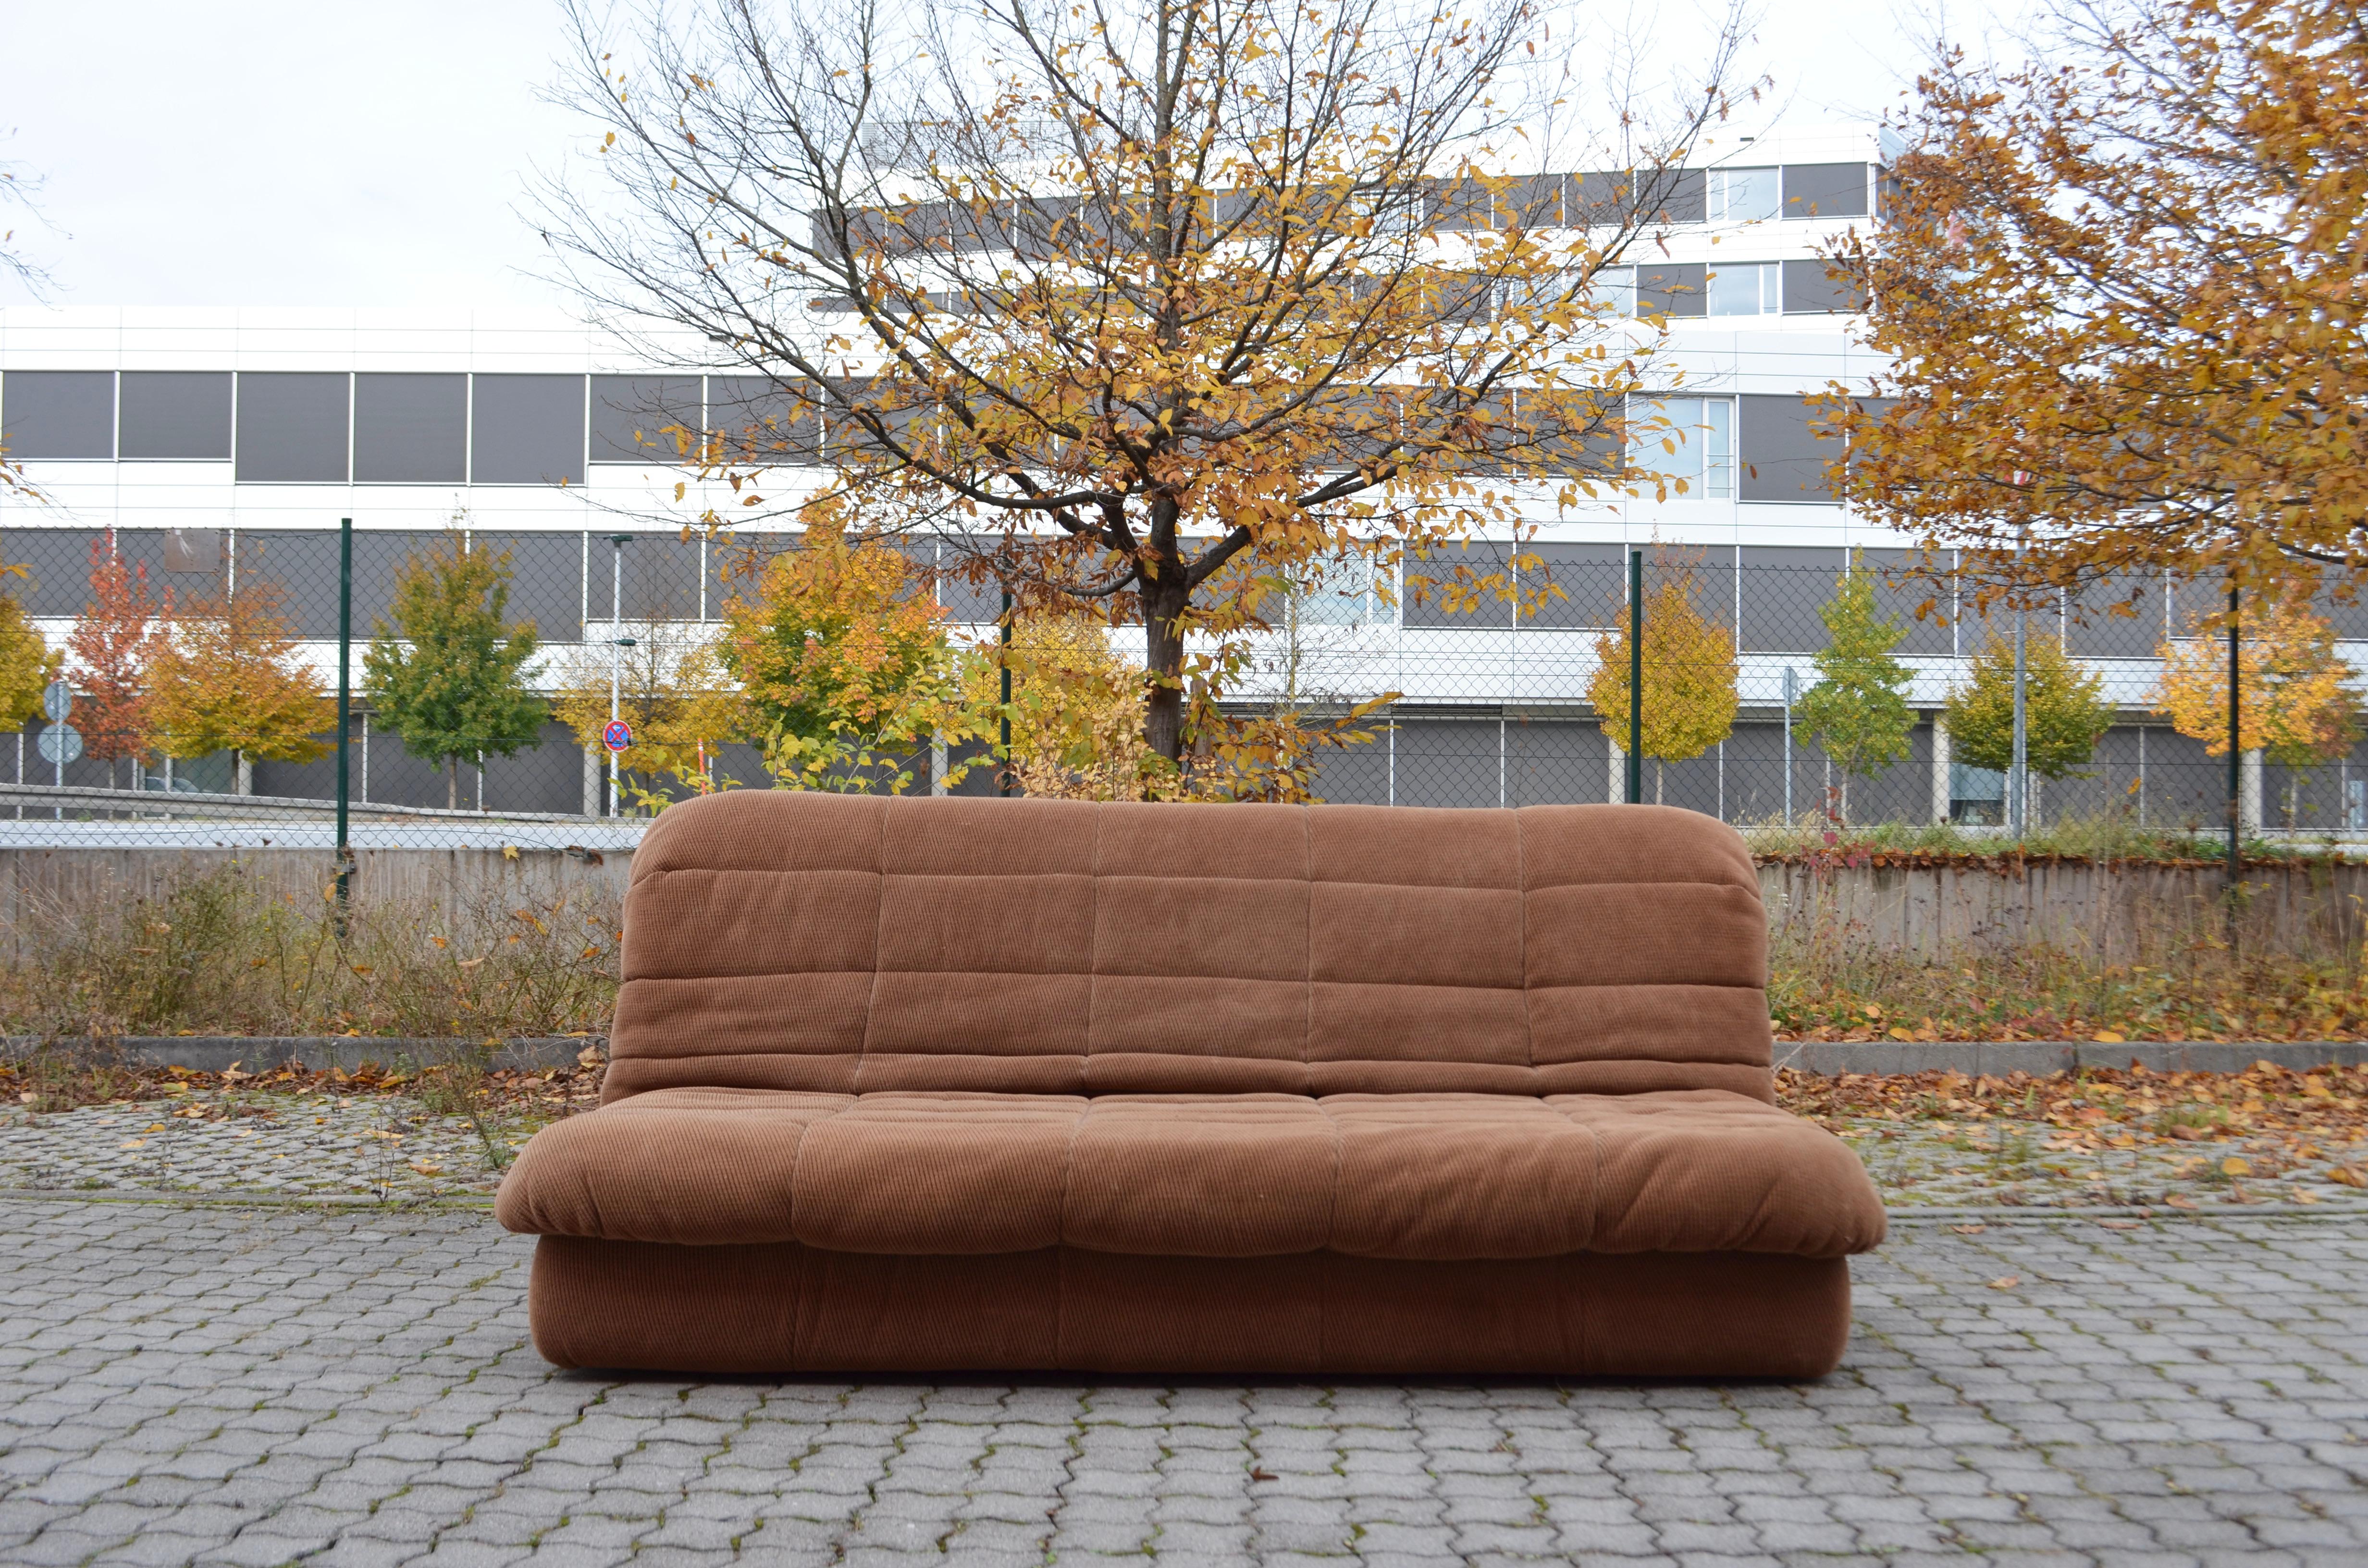 Cinna / Ligne Roset Sofa Daybed Modell GAO entworfen von Jean Paul Laloy.
Rare Daybed Sofa in sehr gutem Zustand.
Die Farbe des Stoffes ist braun und hat eine Veloursstruktur.
Es ist weich und bequem.
Das Sofa lässt sich mit dem Griff leicht